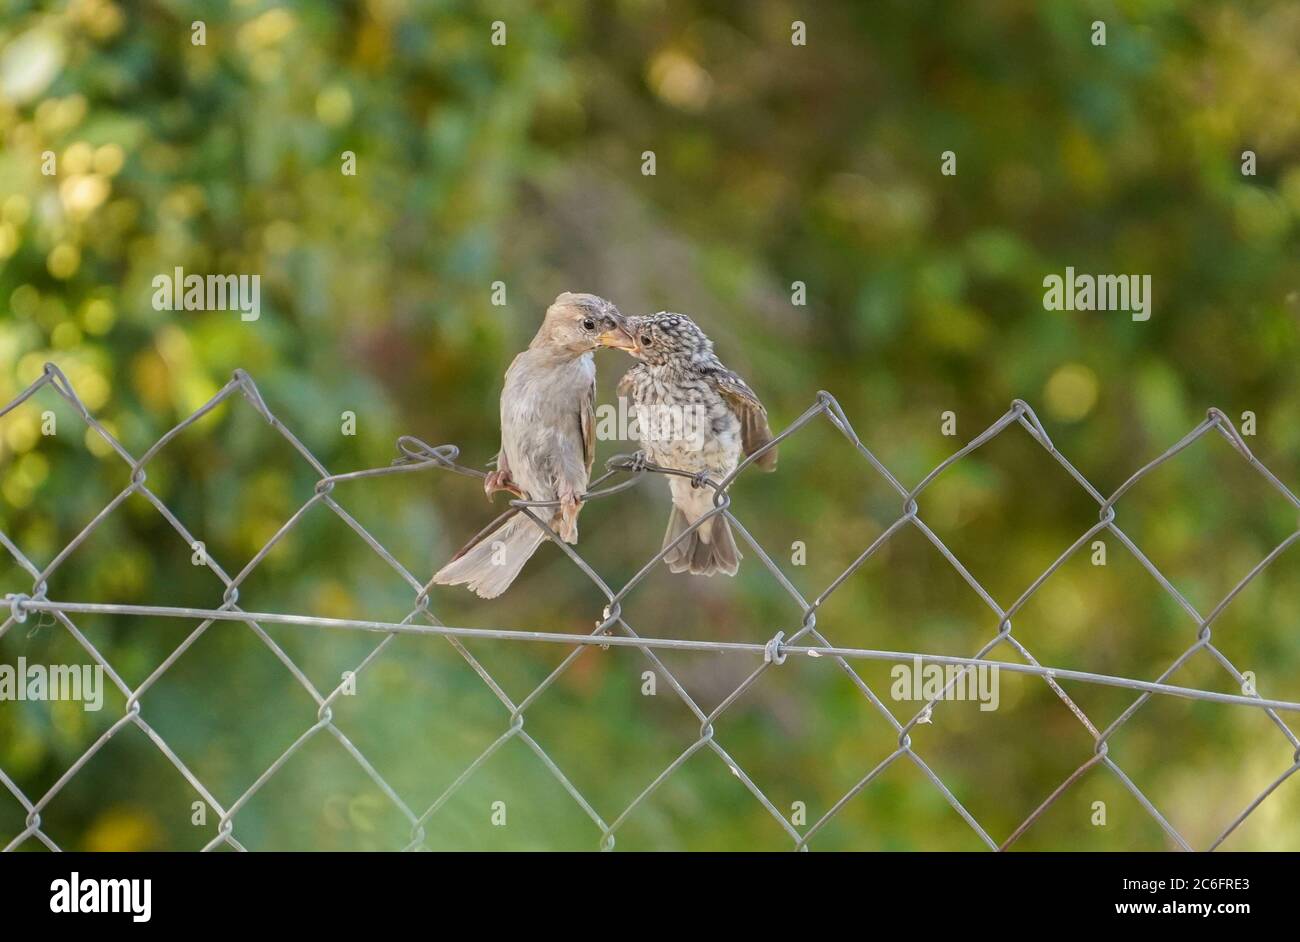 Maison d'éparpilement alimentant un jeune flycatcher tacheté perché sur la clôture. Espagne. Banque D'Images